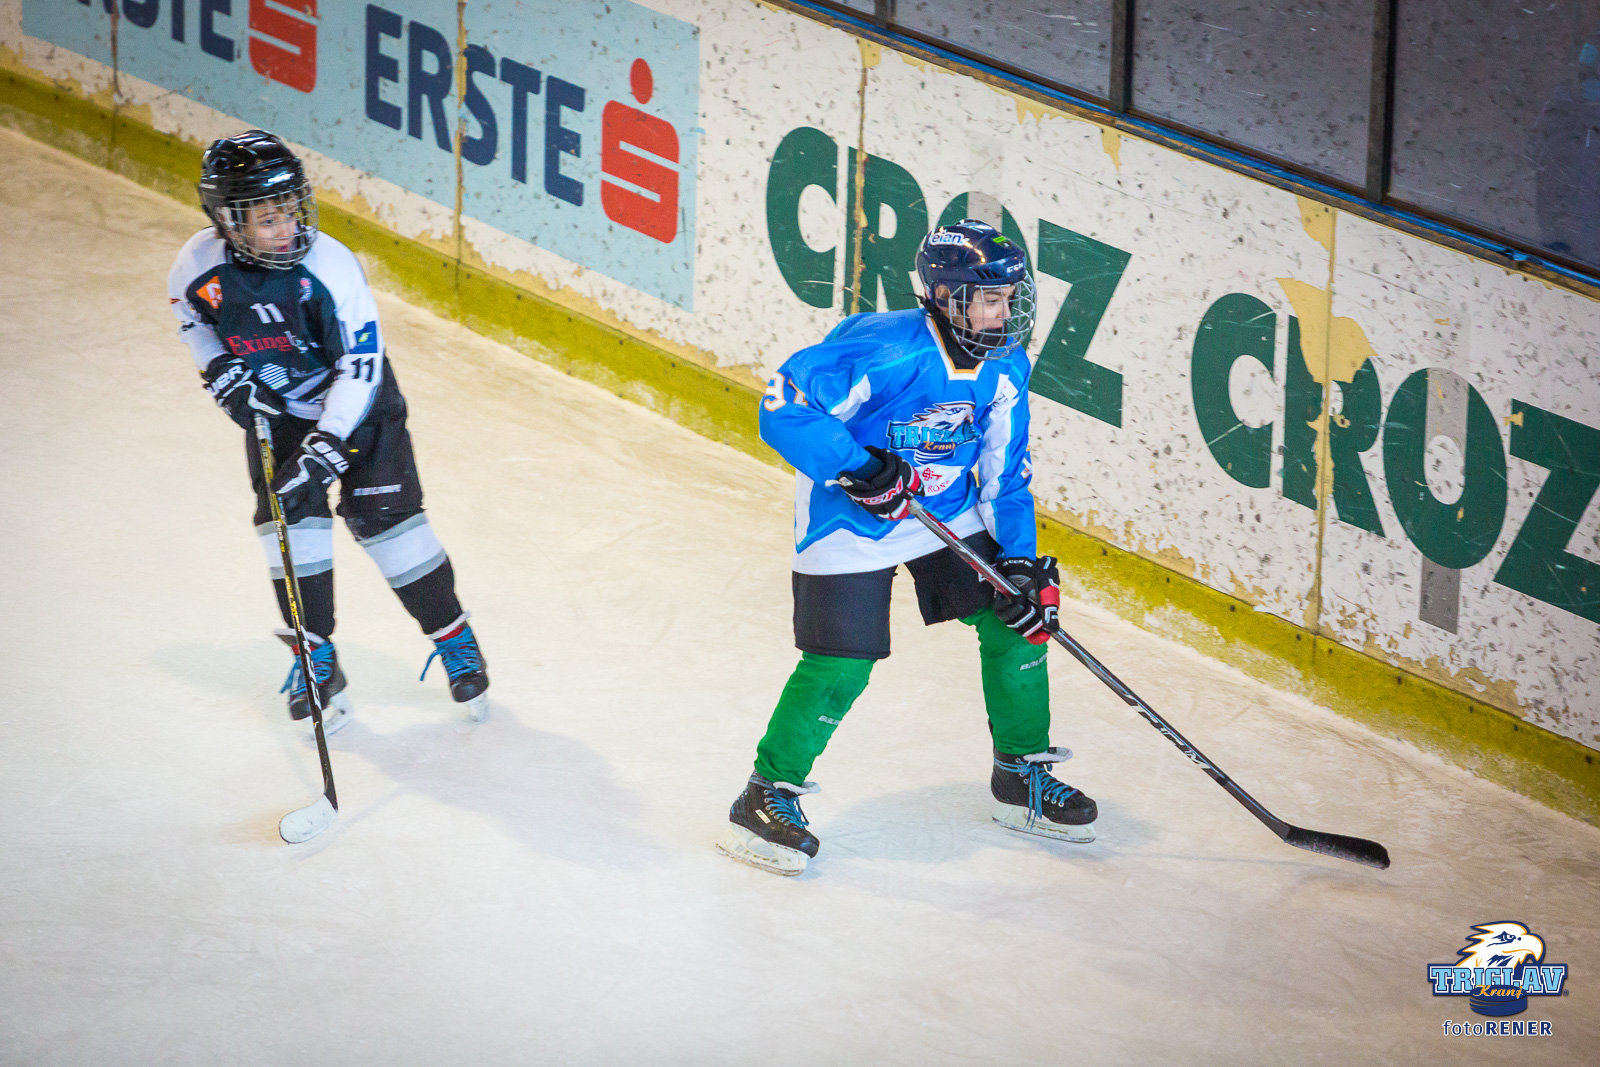 15. odprto prvenstvo Zagreba v hokeju na ledu (1.dan), 16.2.2019